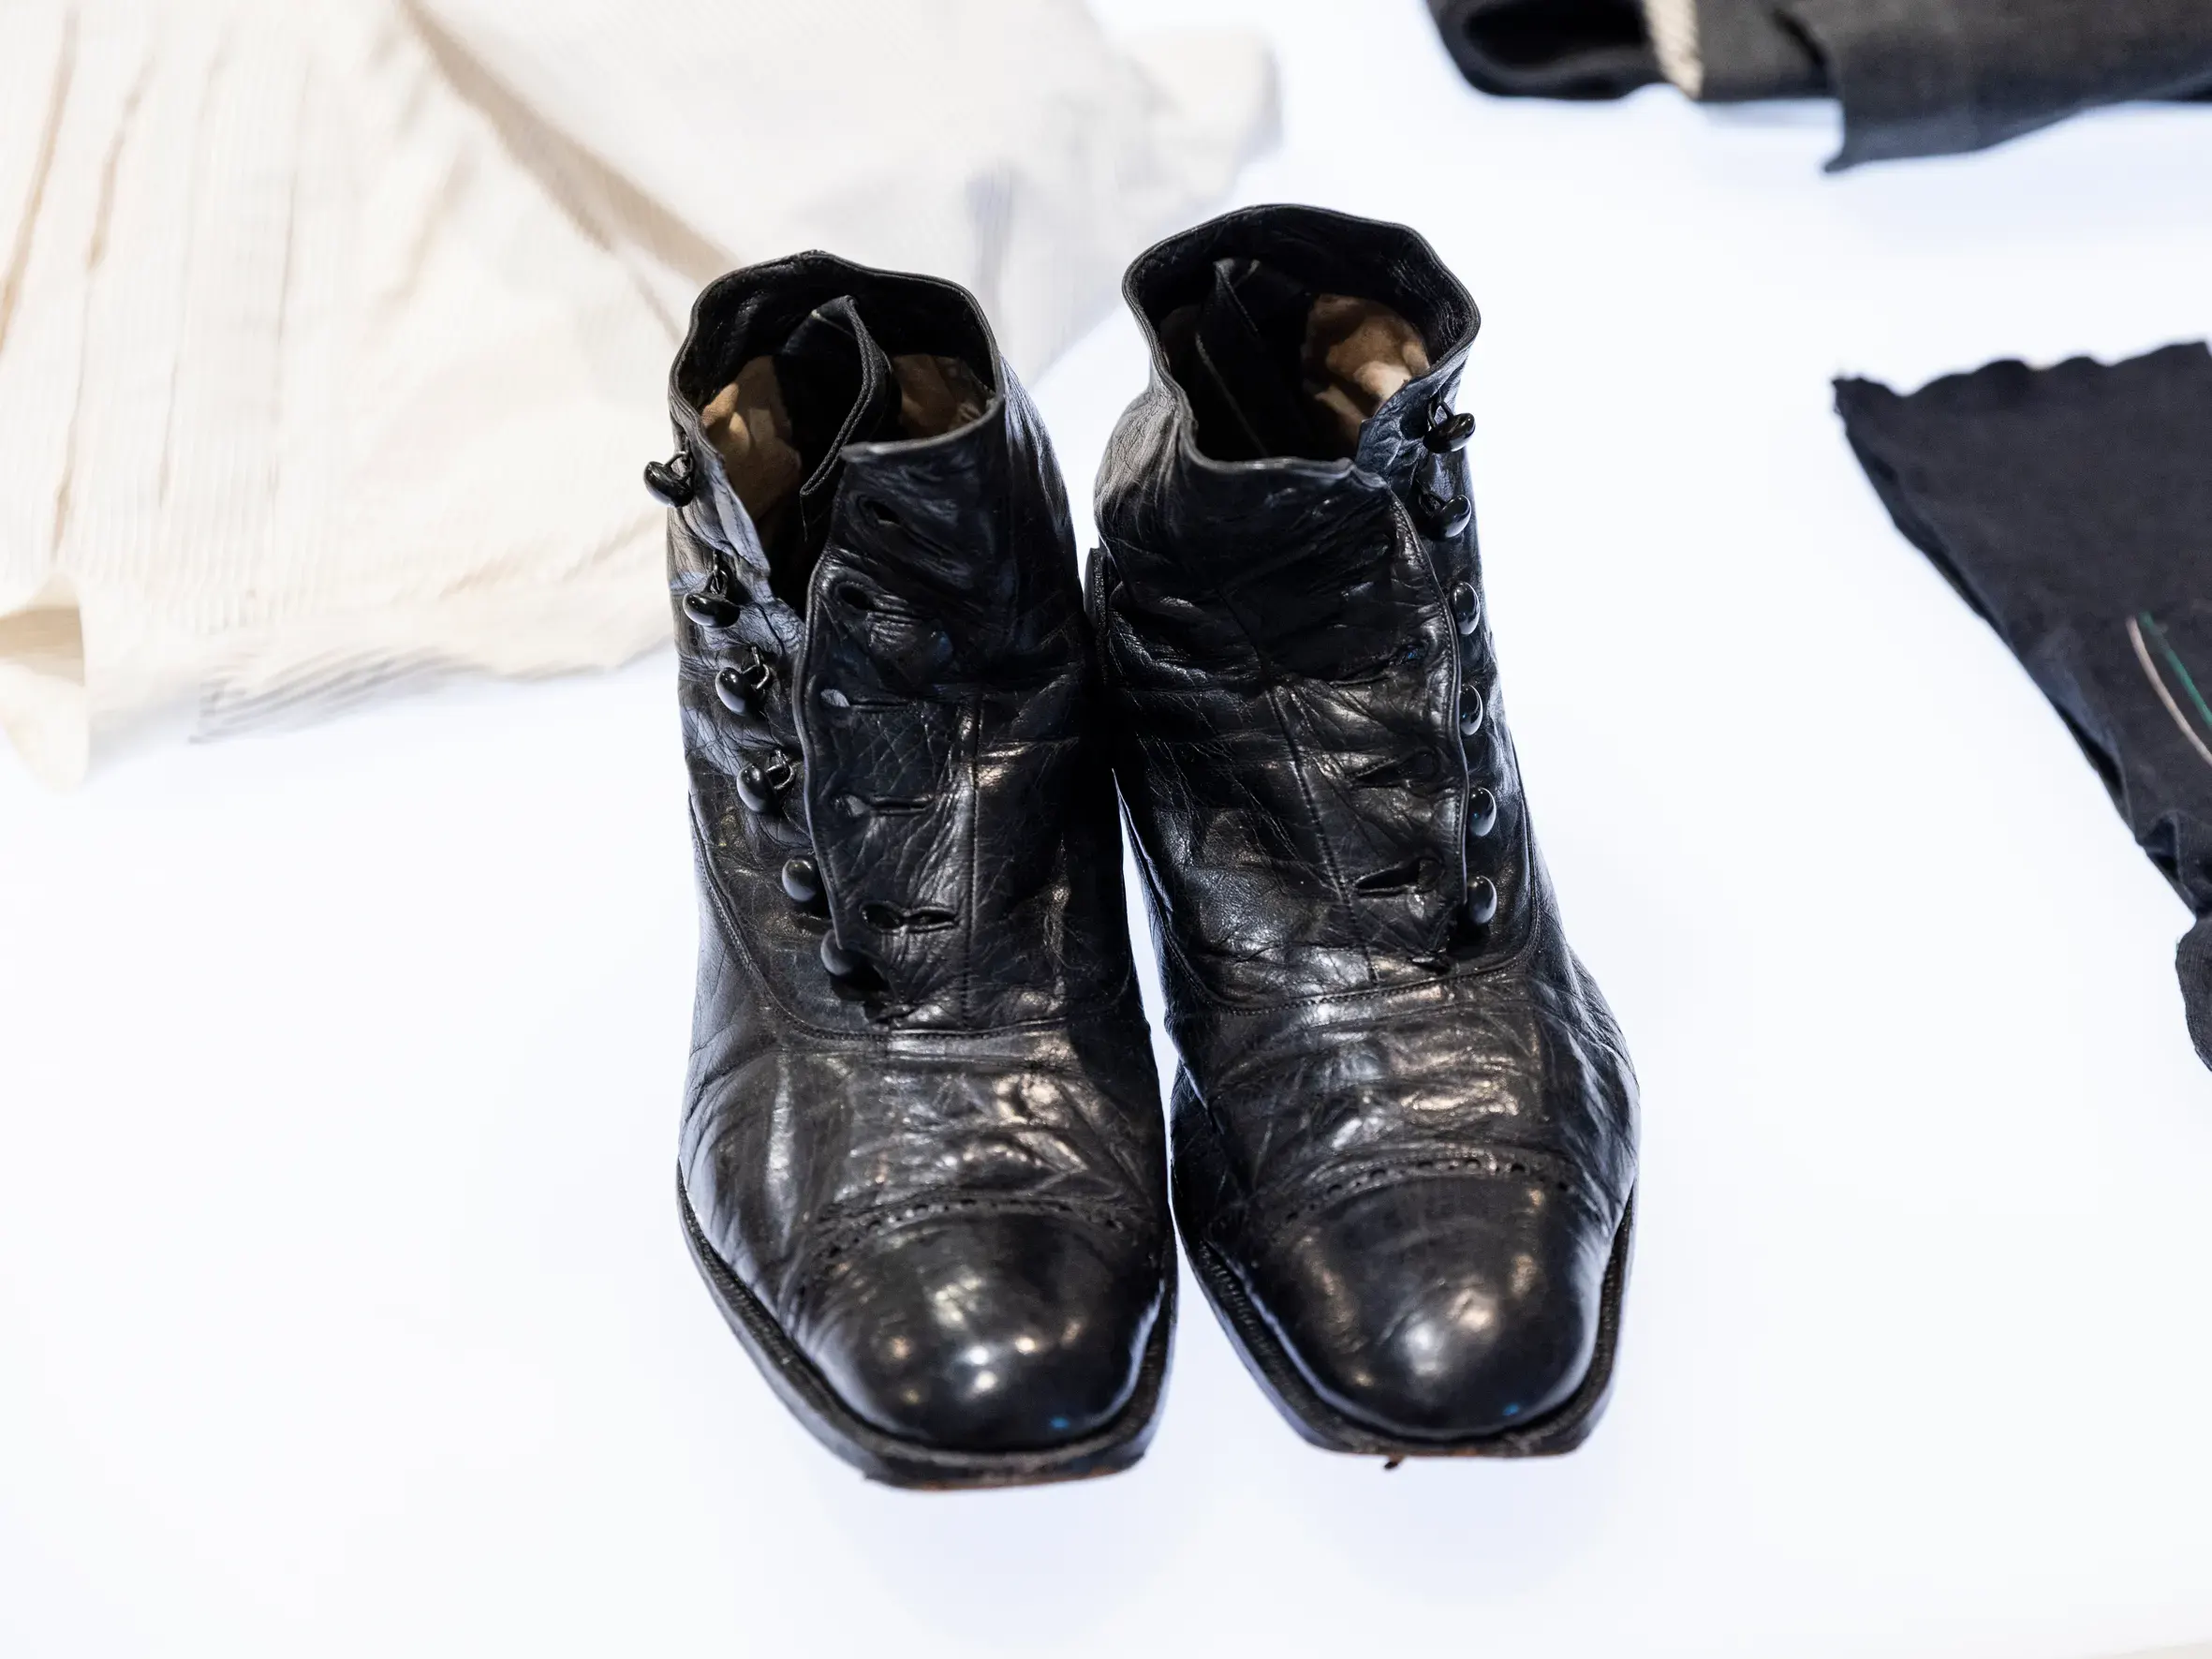 In der Mitte des Bildes steht ein Paar schwarz-glänzende Schuhe. Es handelt sich um eine Art Stiefeletten, die mit sechs Knöpfen zugemacht werden. Rechts davon liegen zwei dunkle Kleidungsstücke, von denen nur ein Teil zu sehen ist und auch das nur verschwommen. Links hinter den Schuhen liegt ein weisses Hemd mit schwarzen Streifen.